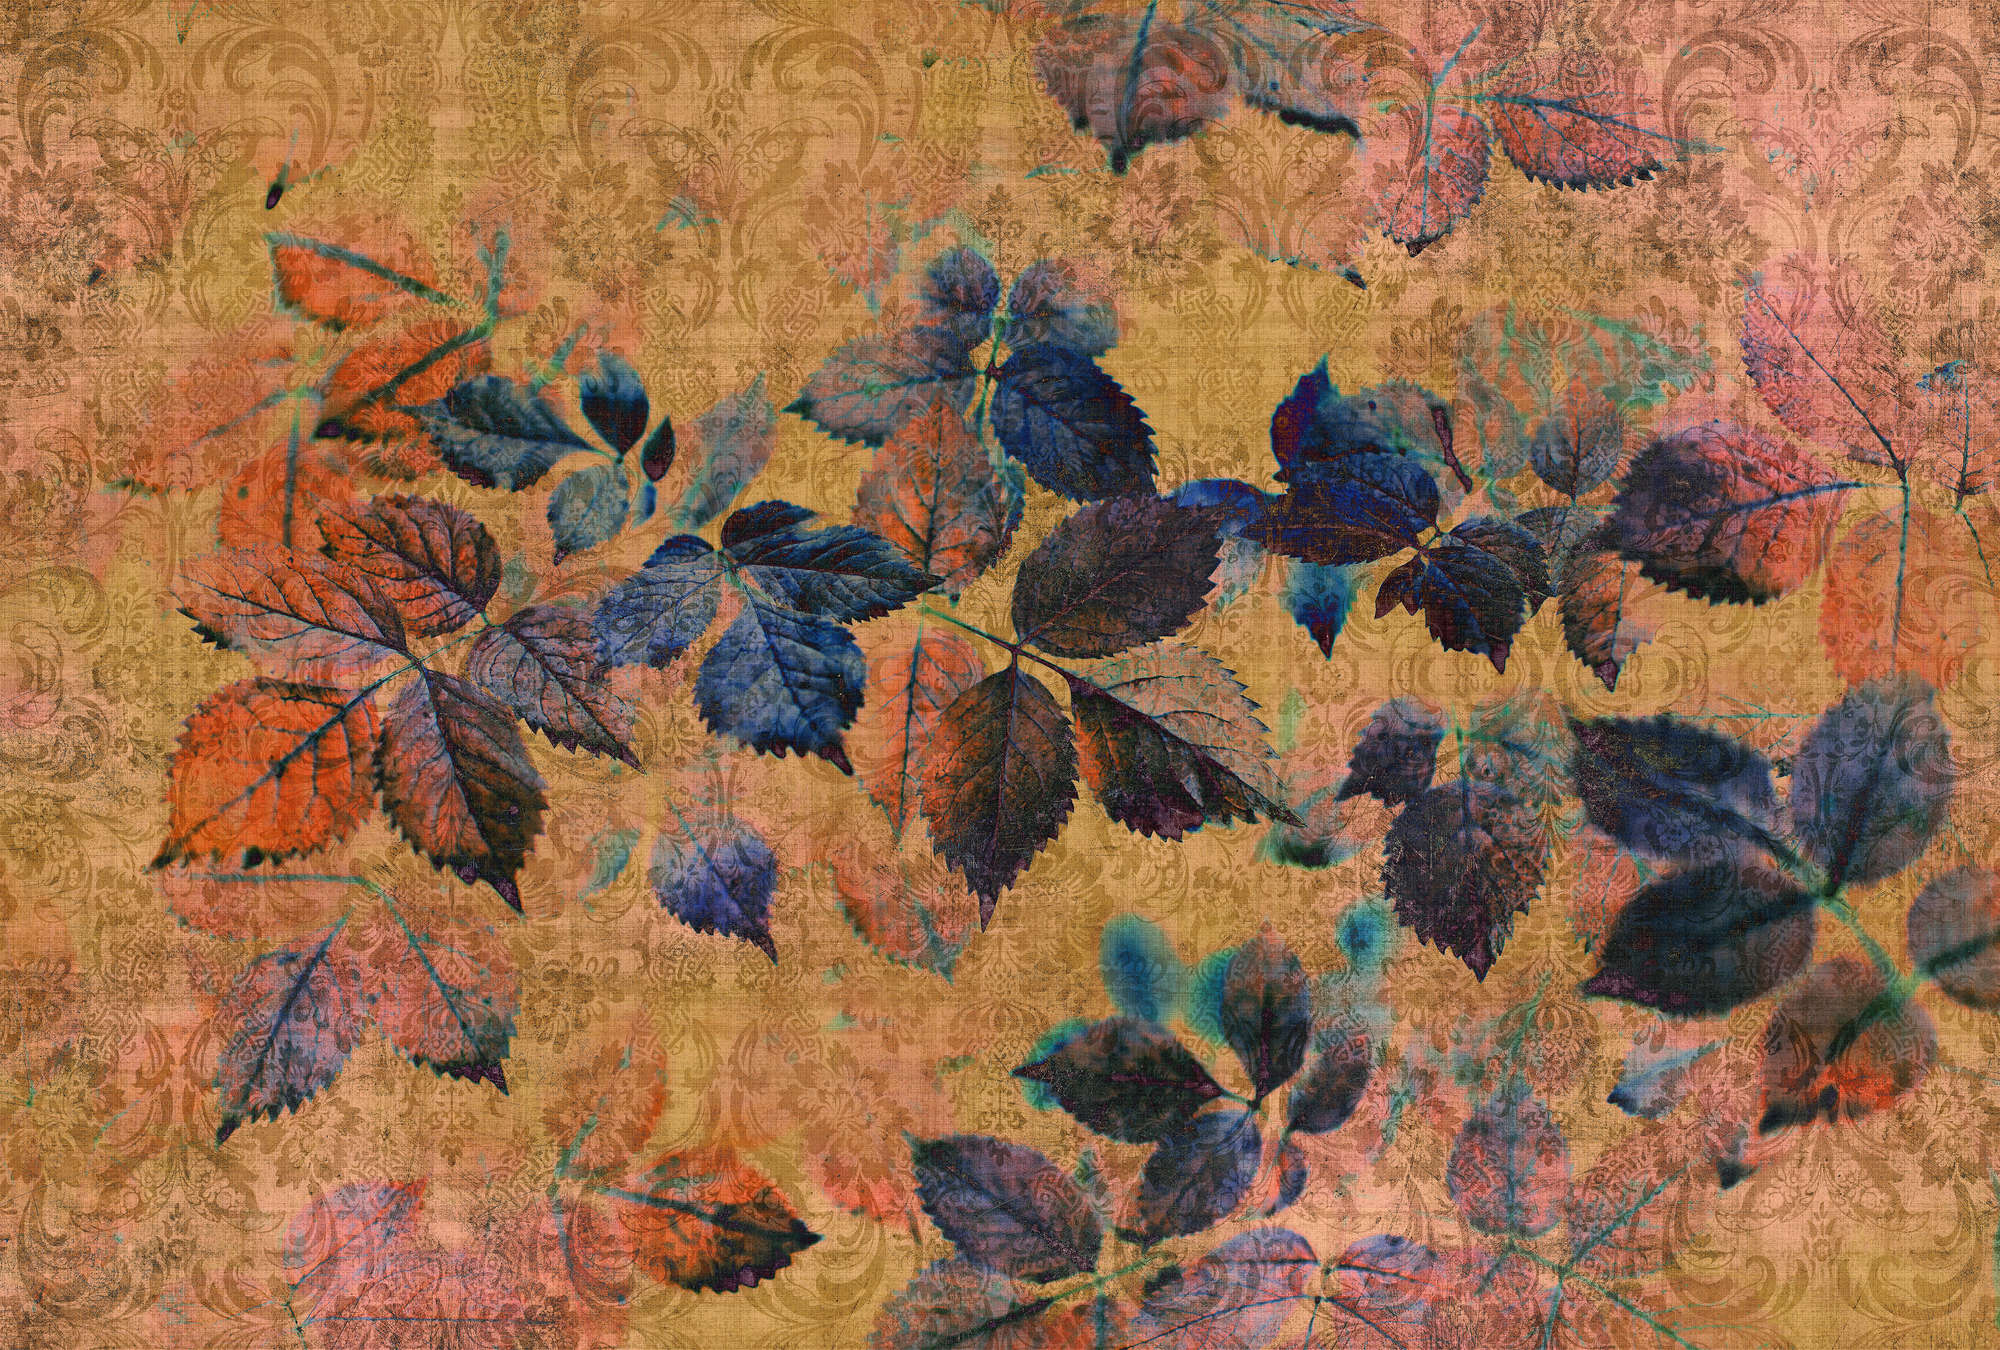             Indian summer 2 - Carta da parati floreale con struttura in lino naturale dall'atmosfera calda - Giallo, arancione | Natura qualita consistenza in tessuto non tessuto
        